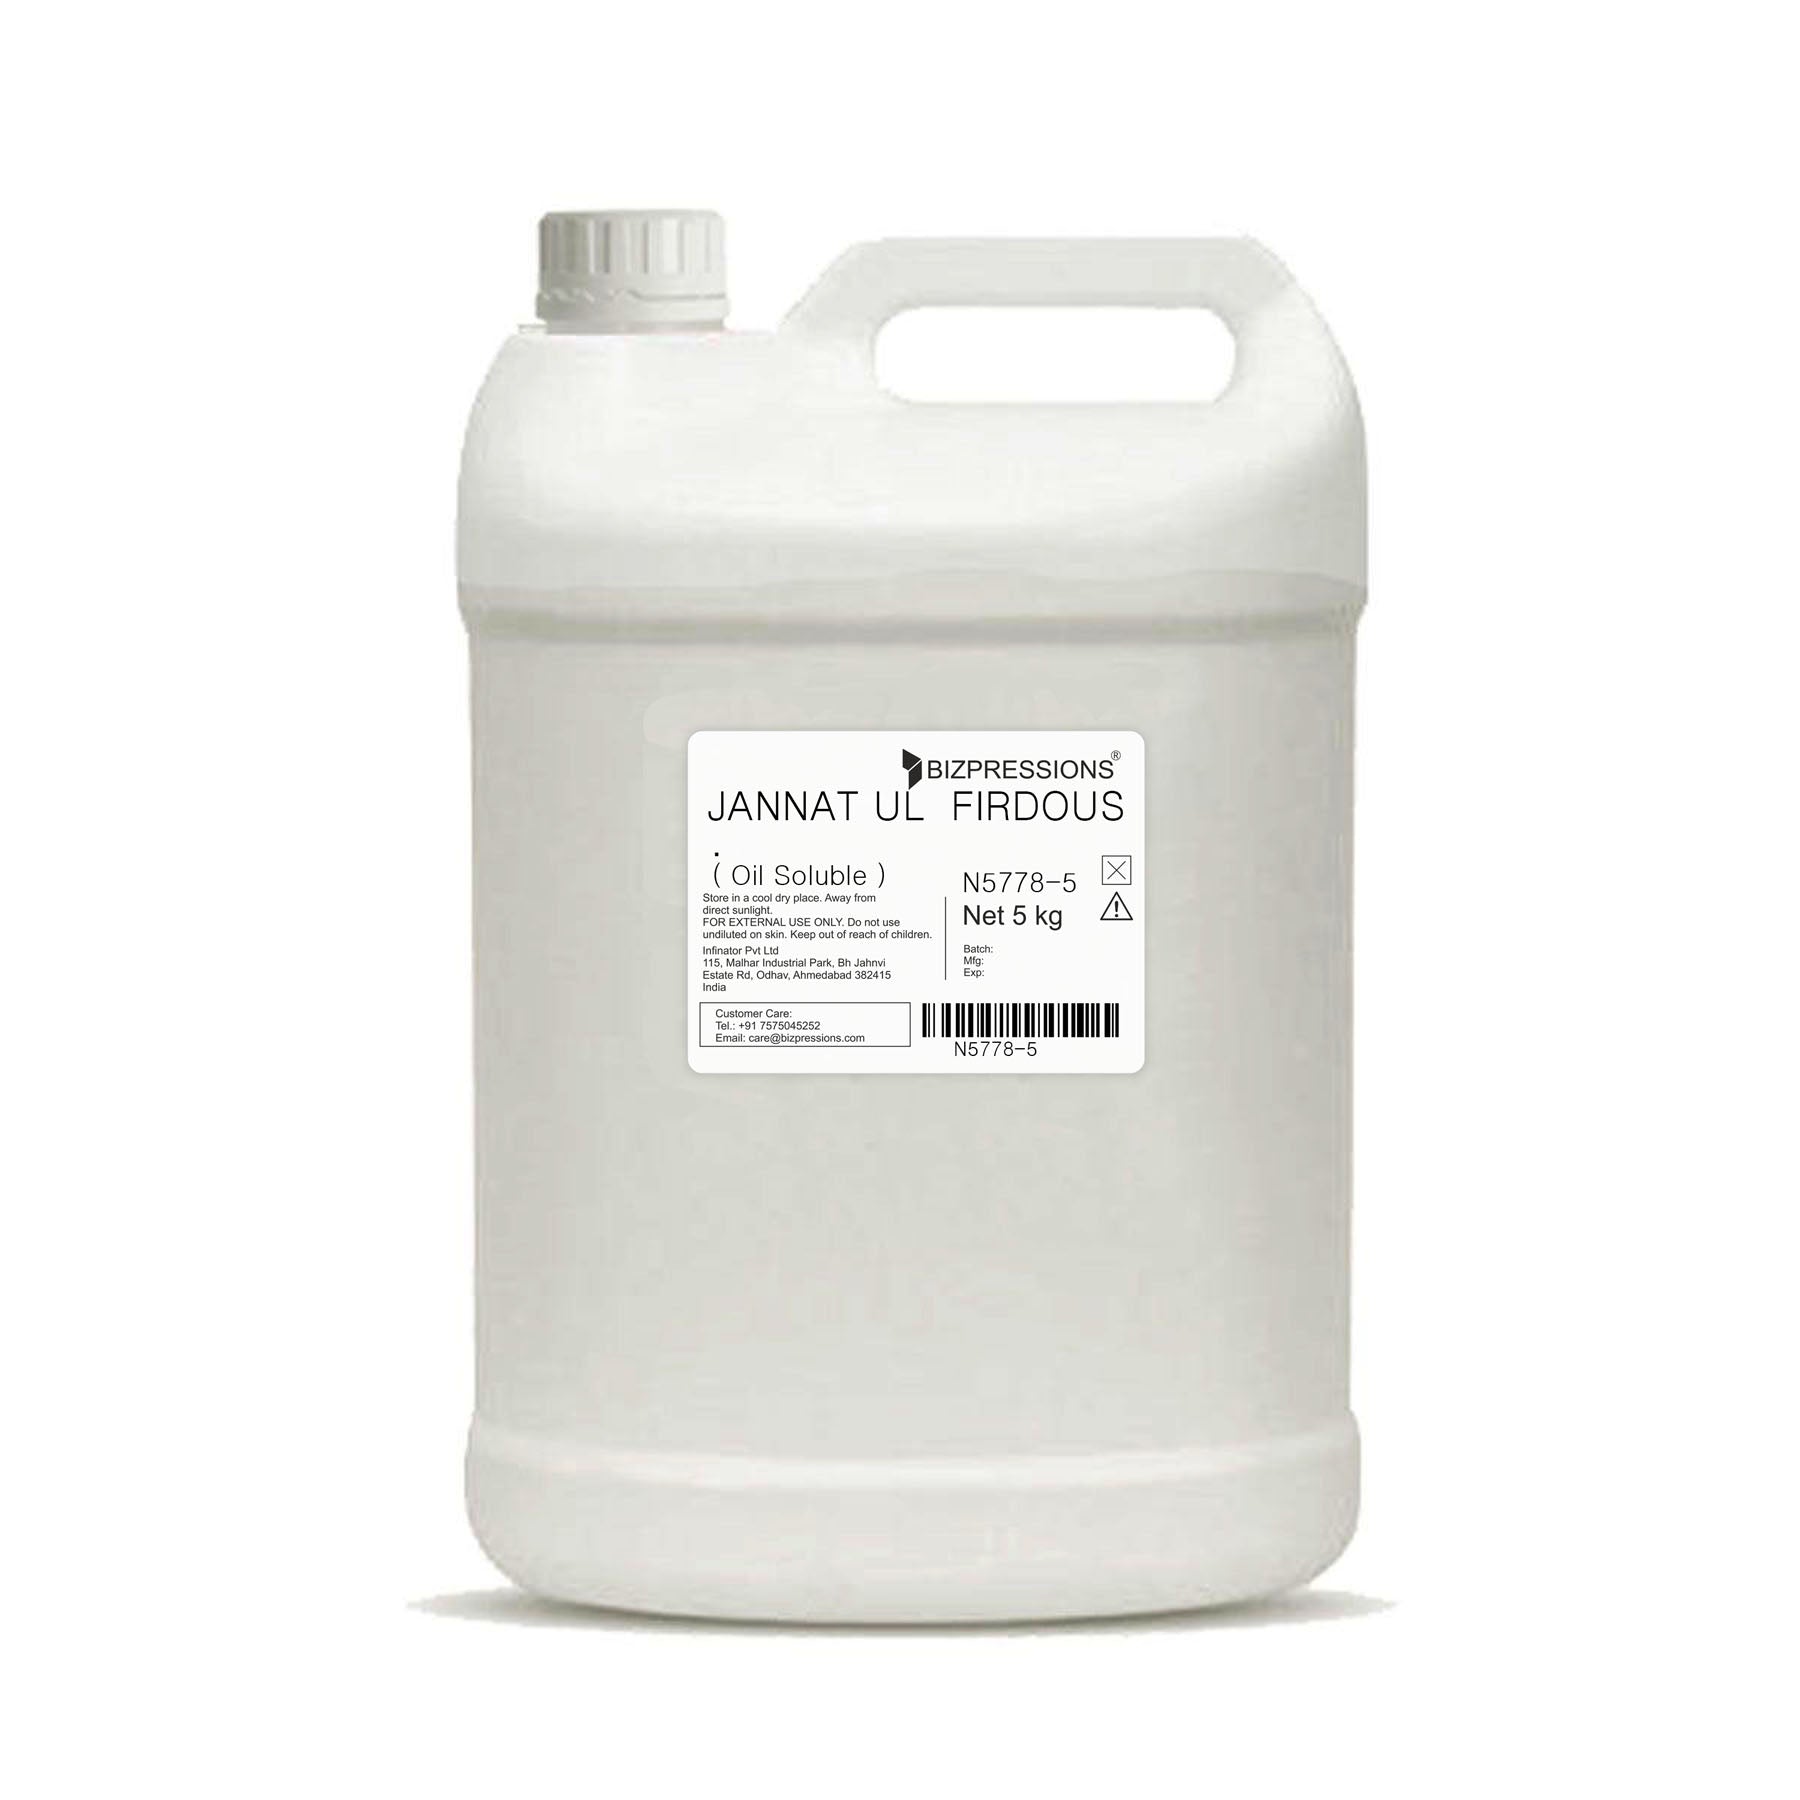 JANNAT UL FIRDOUS - Fragrance ( Oil Soluble ) - 5 kg